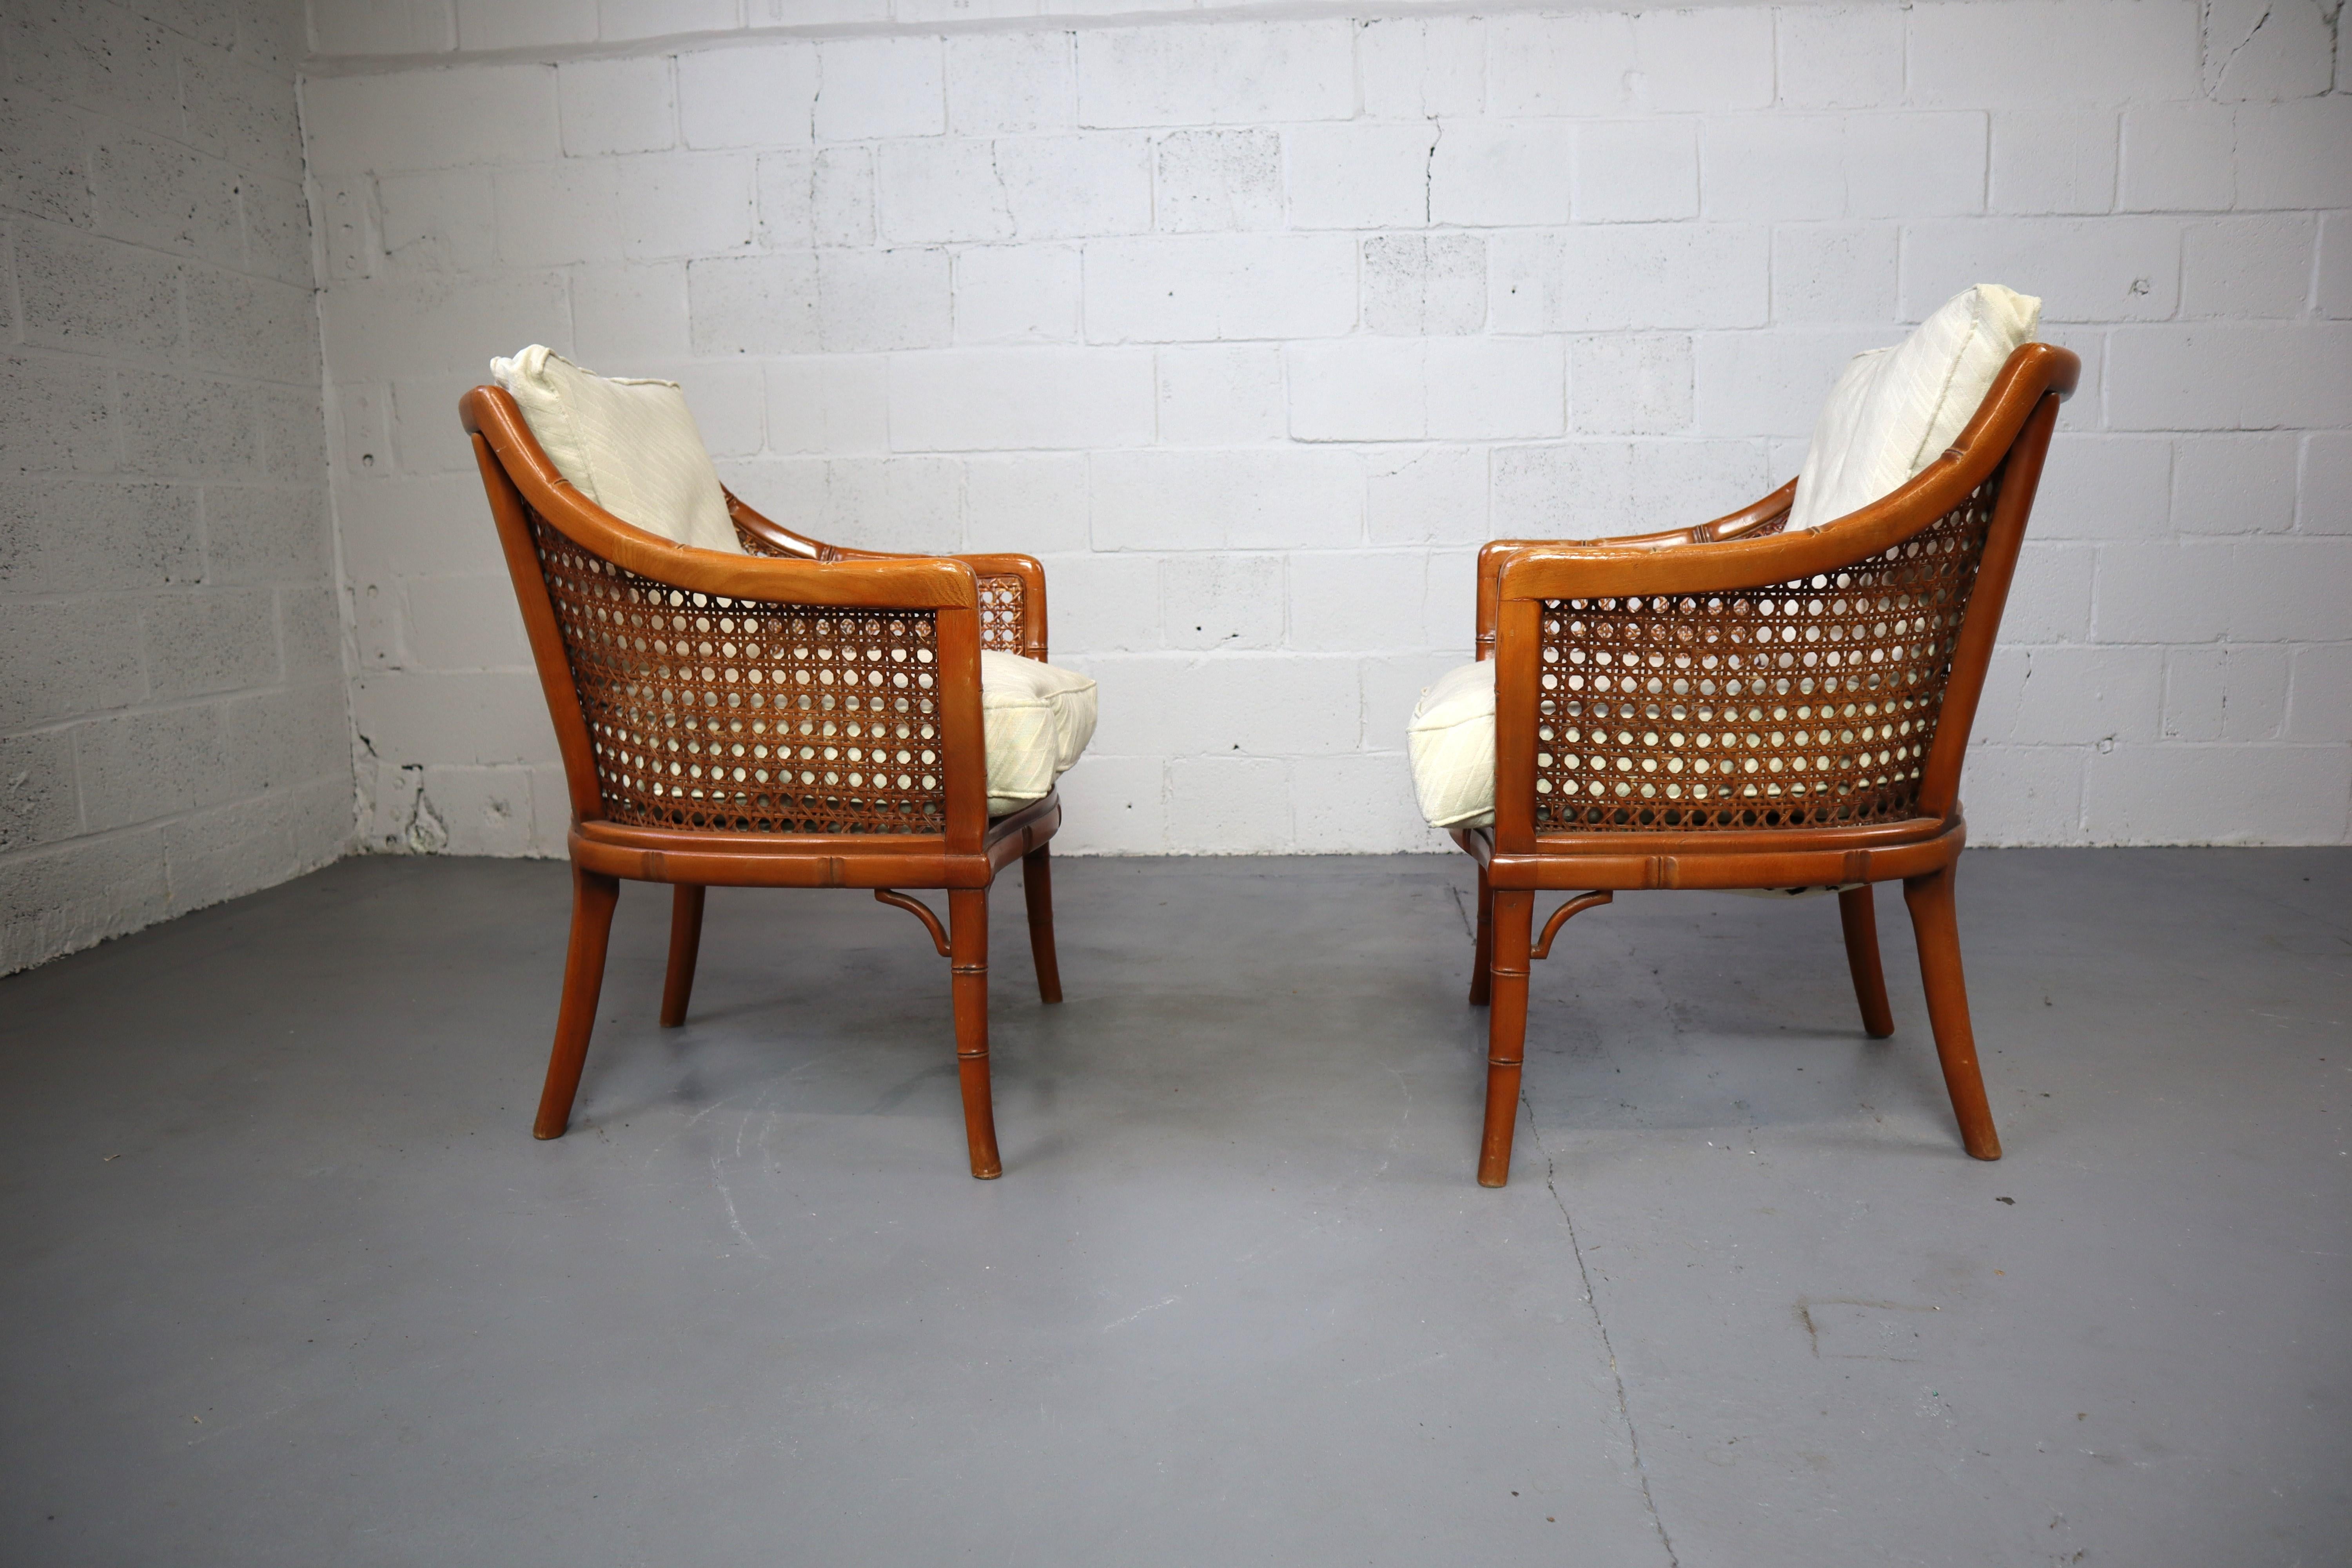 Paar Giorgetti Faux Bambus und Rattan Sessel, 1970er Jahre.
Sessel mit großartigem Styling und Komfort. Die Stühle sind mit Rahmen aus Bambusimitat und geflochtenen Rattanseiten und -lehnen ausgestattet.